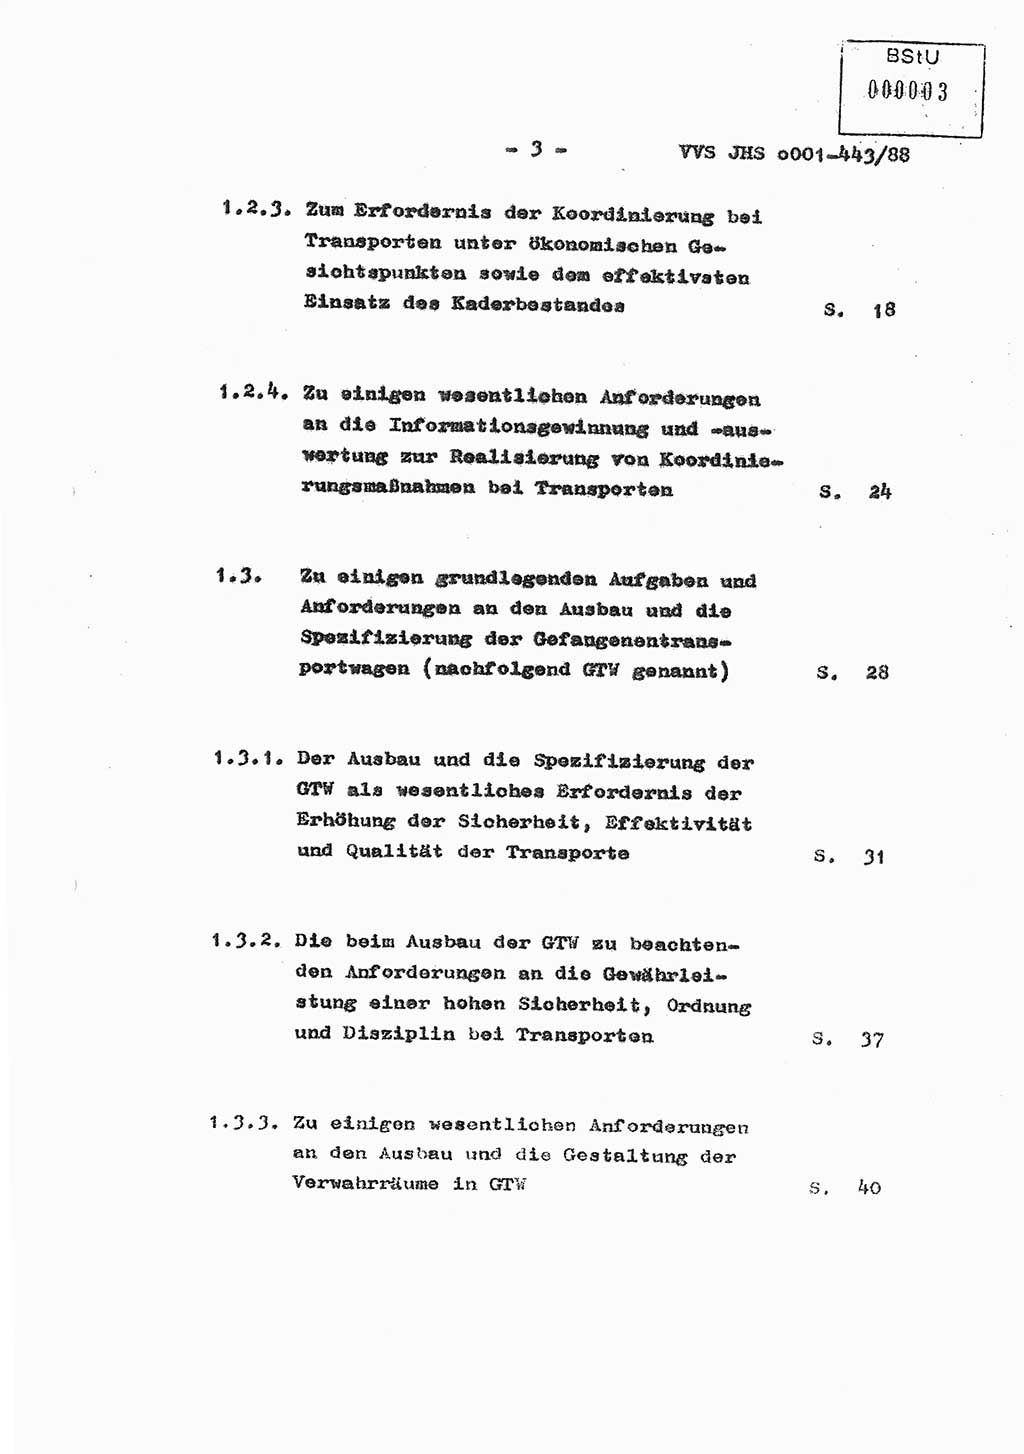 Diplomarbeit Hauptmann Michael Rast (Abt. ⅩⅣ), Major Bernd Rahaus (Abt. ⅩⅣ), Ministerium für Staatssicherheit (MfS) [Deutsche Demokratische Republik (DDR)], Juristische Hochschule (JHS), Vertrauliche Verschlußsache (VVS) o001-443/88, Potsdam 1988, Seite 3 (Dipl.-Arb. MfS DDR JHS VVS o001-443/88 1988, S. 3)